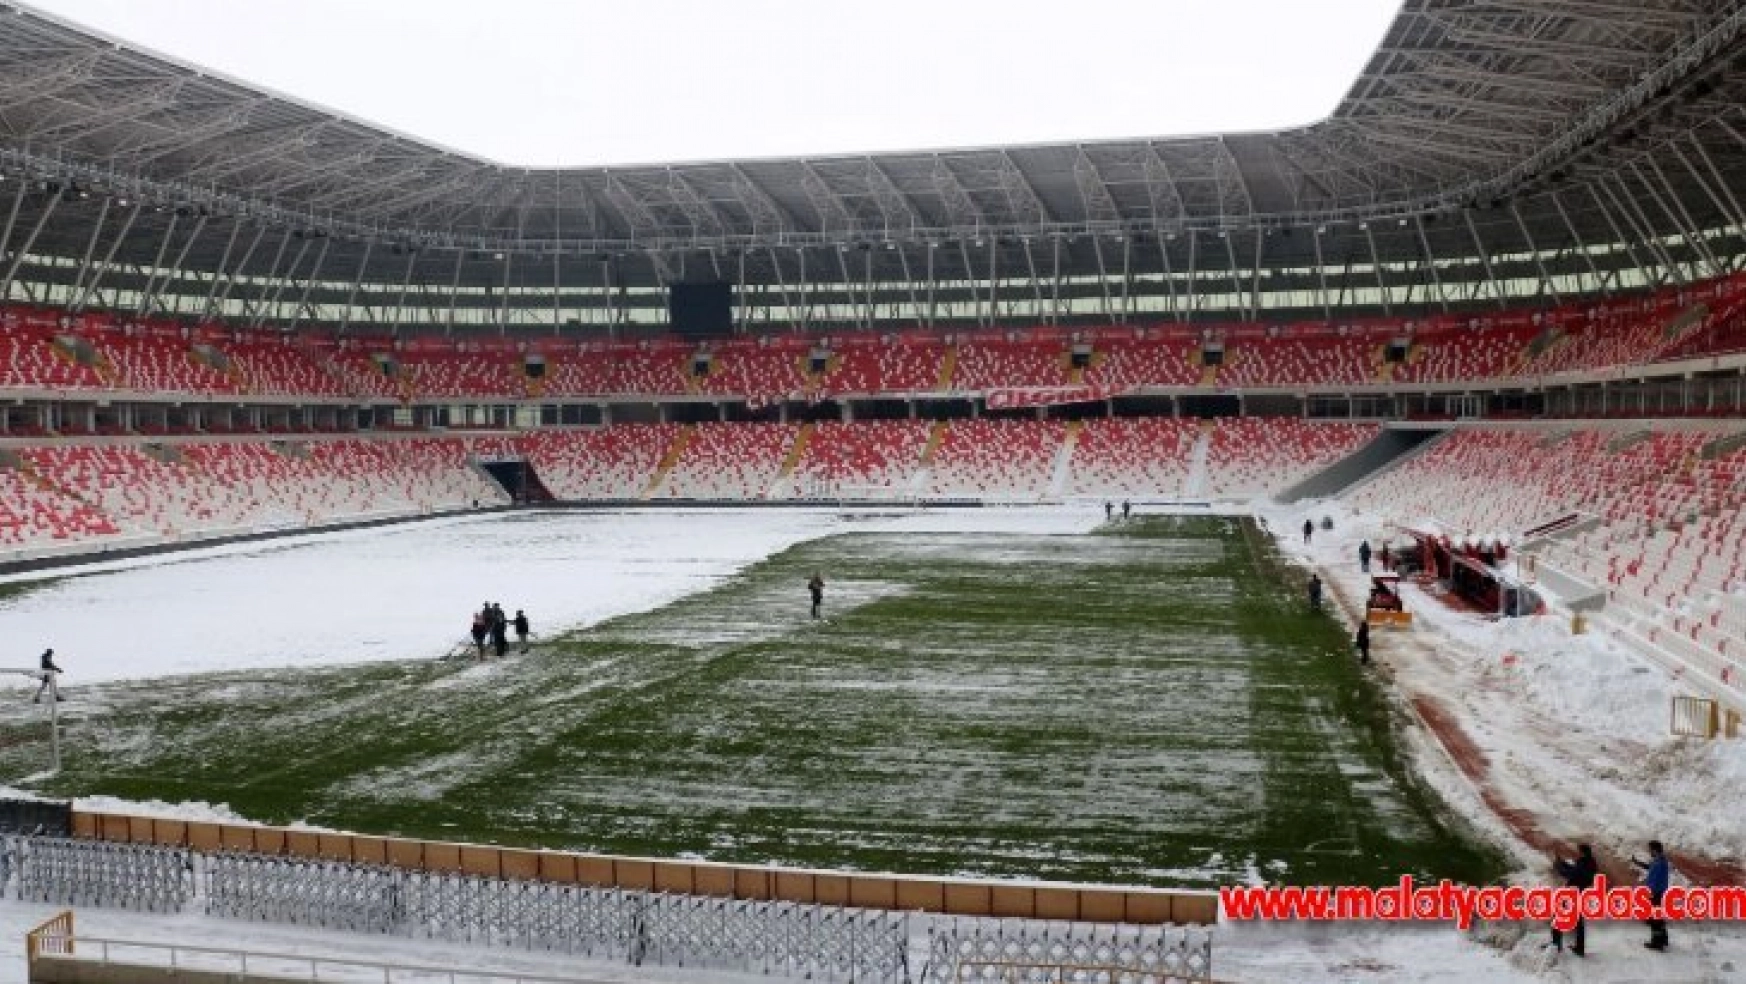 Sivasspor - Antalyaspor maçının oynanmasına karar verildi